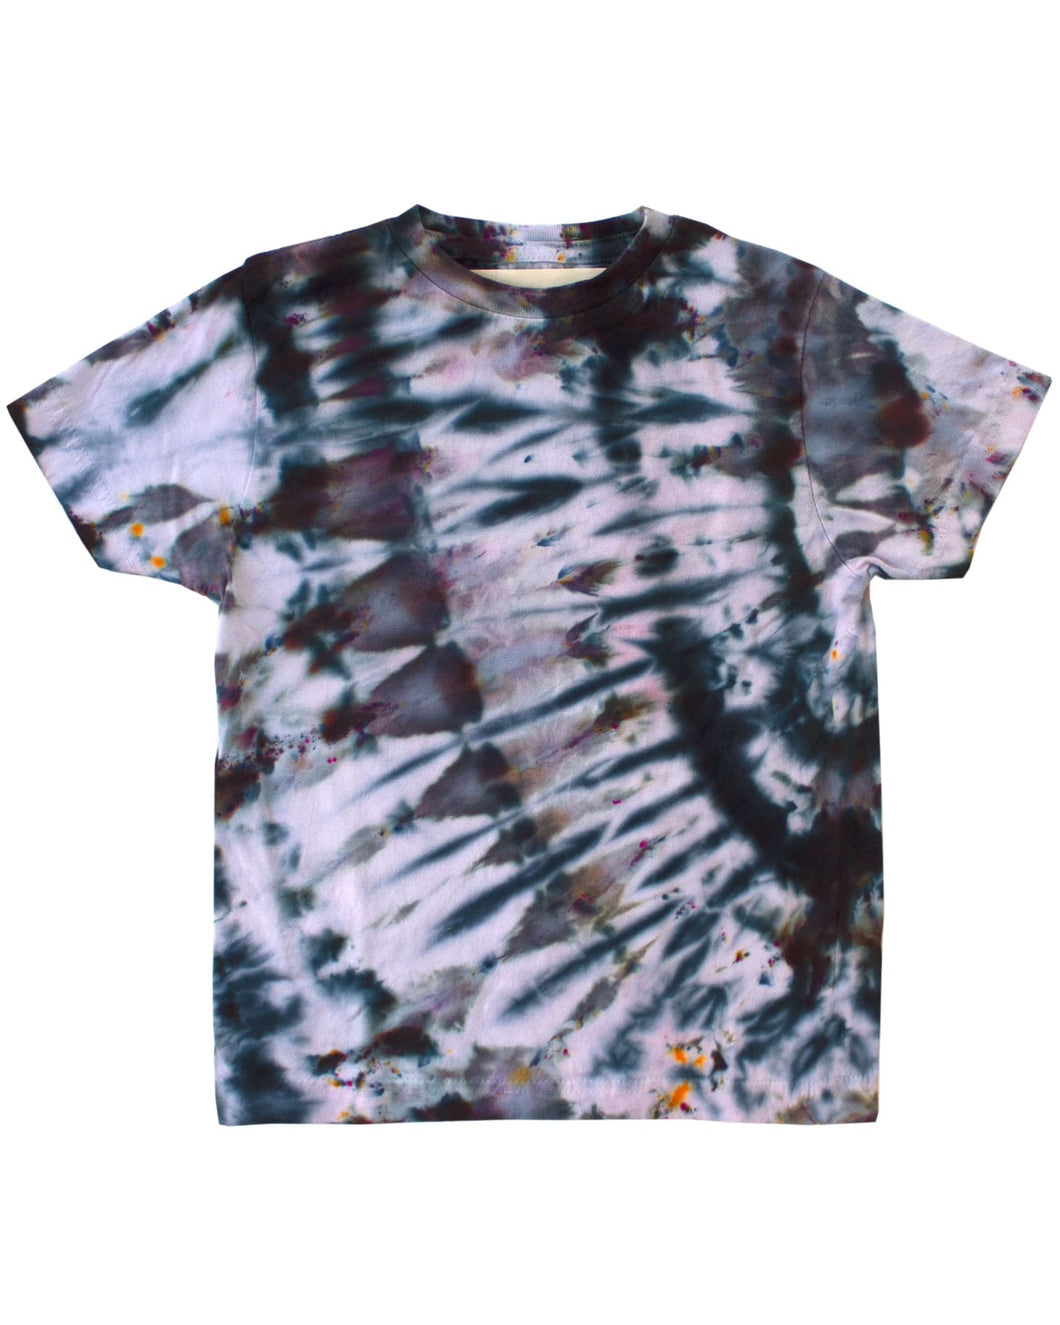 Dust Dye Kids T-Shirt - Spectral Black